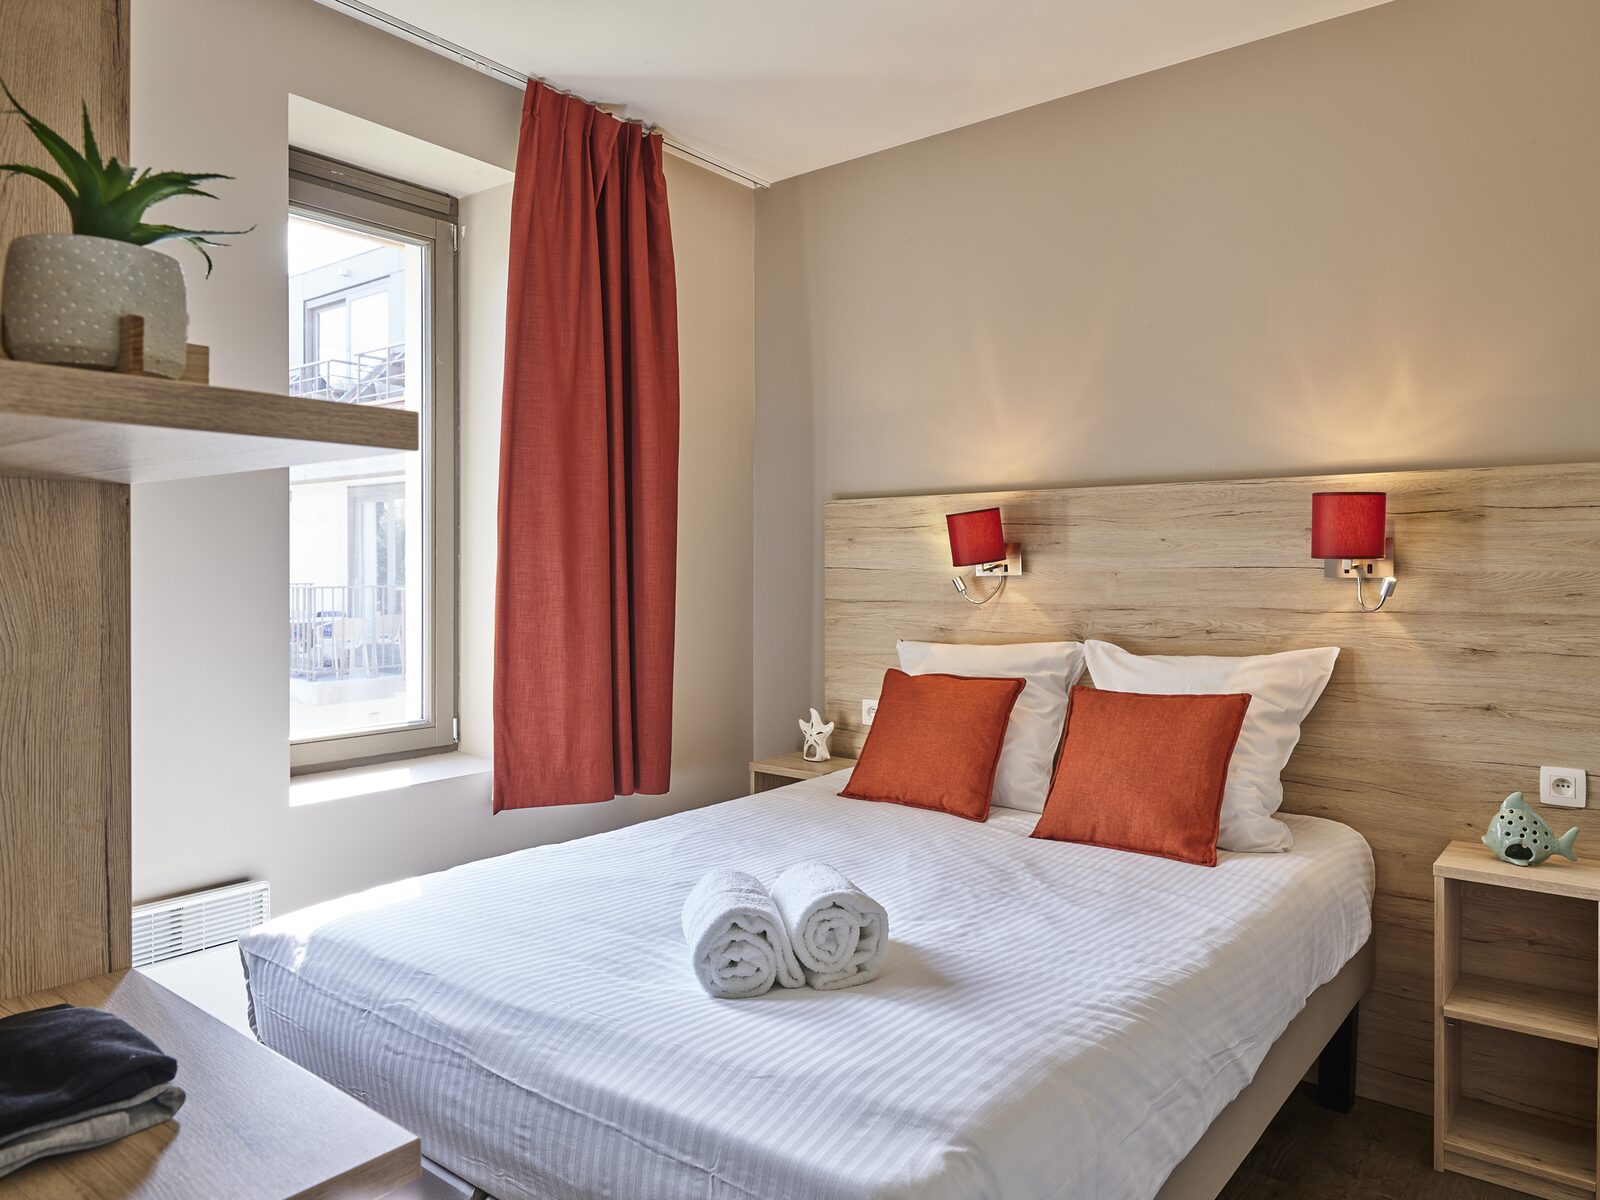 Comfort Suite - 7p | Bedroom - Sleeping corner - Sofa bed